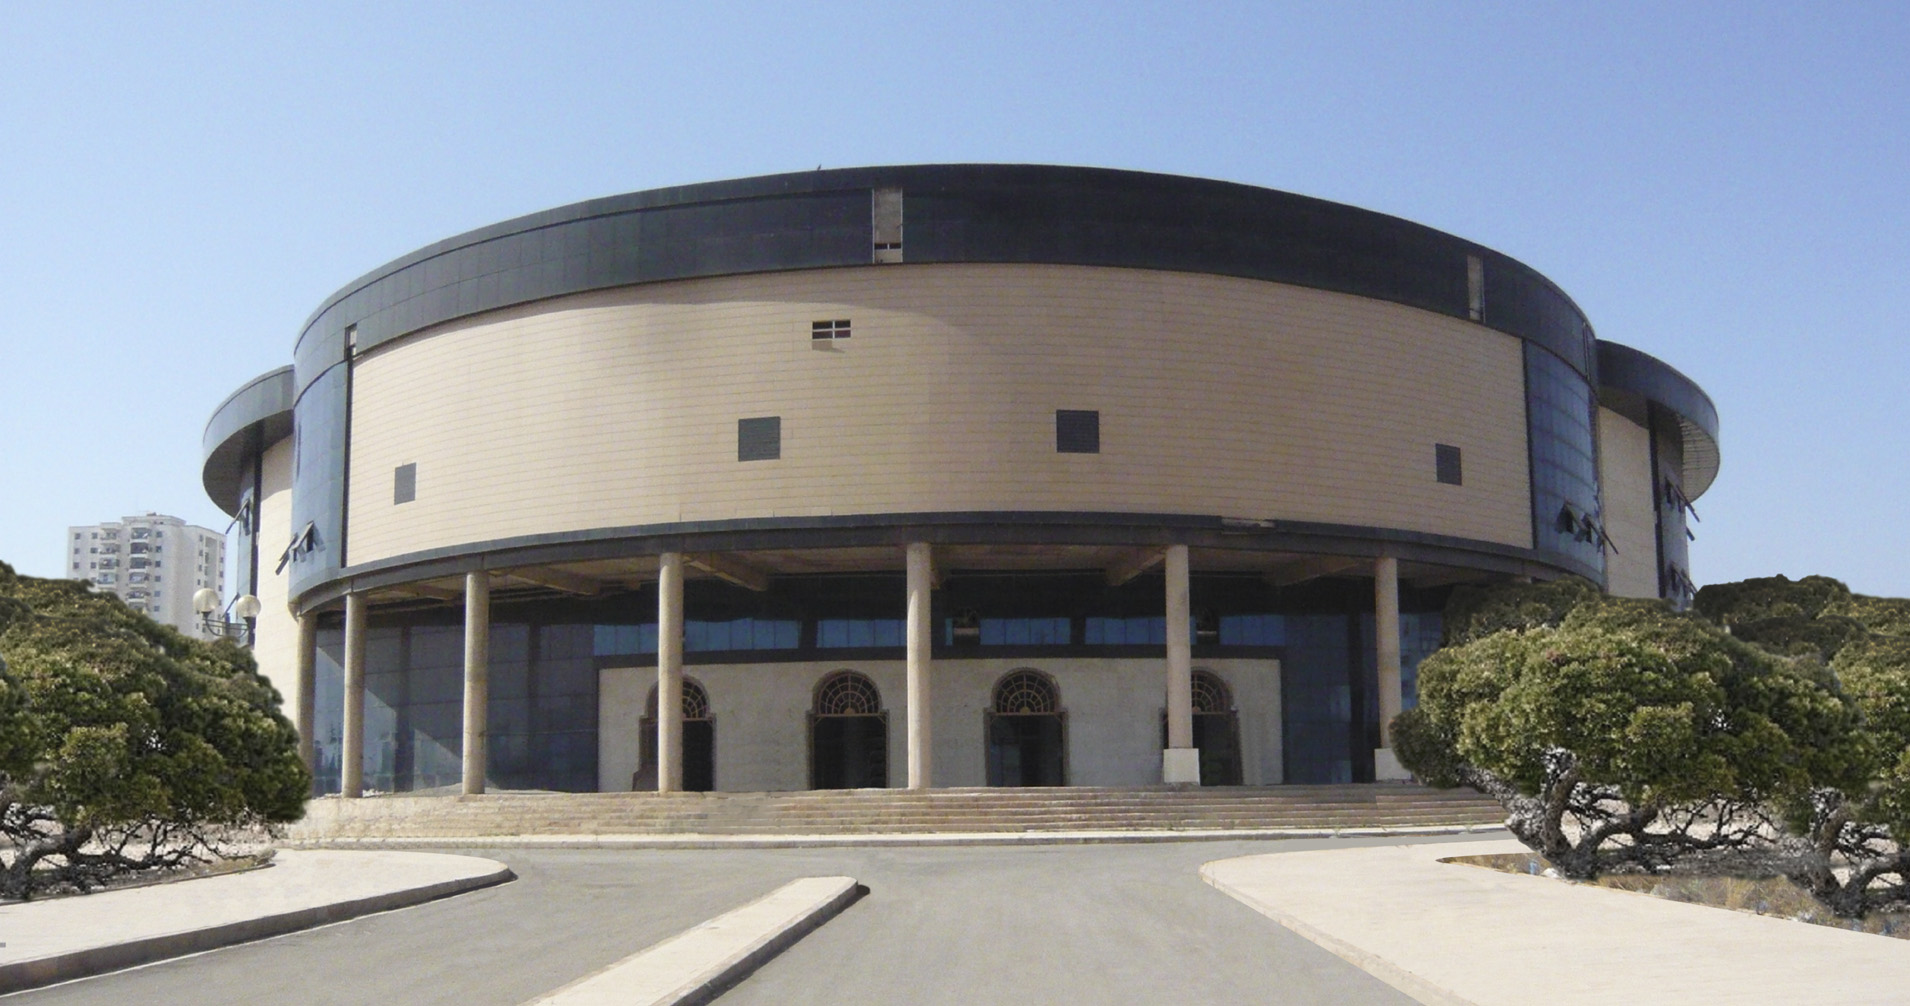  Auditorium and congress center